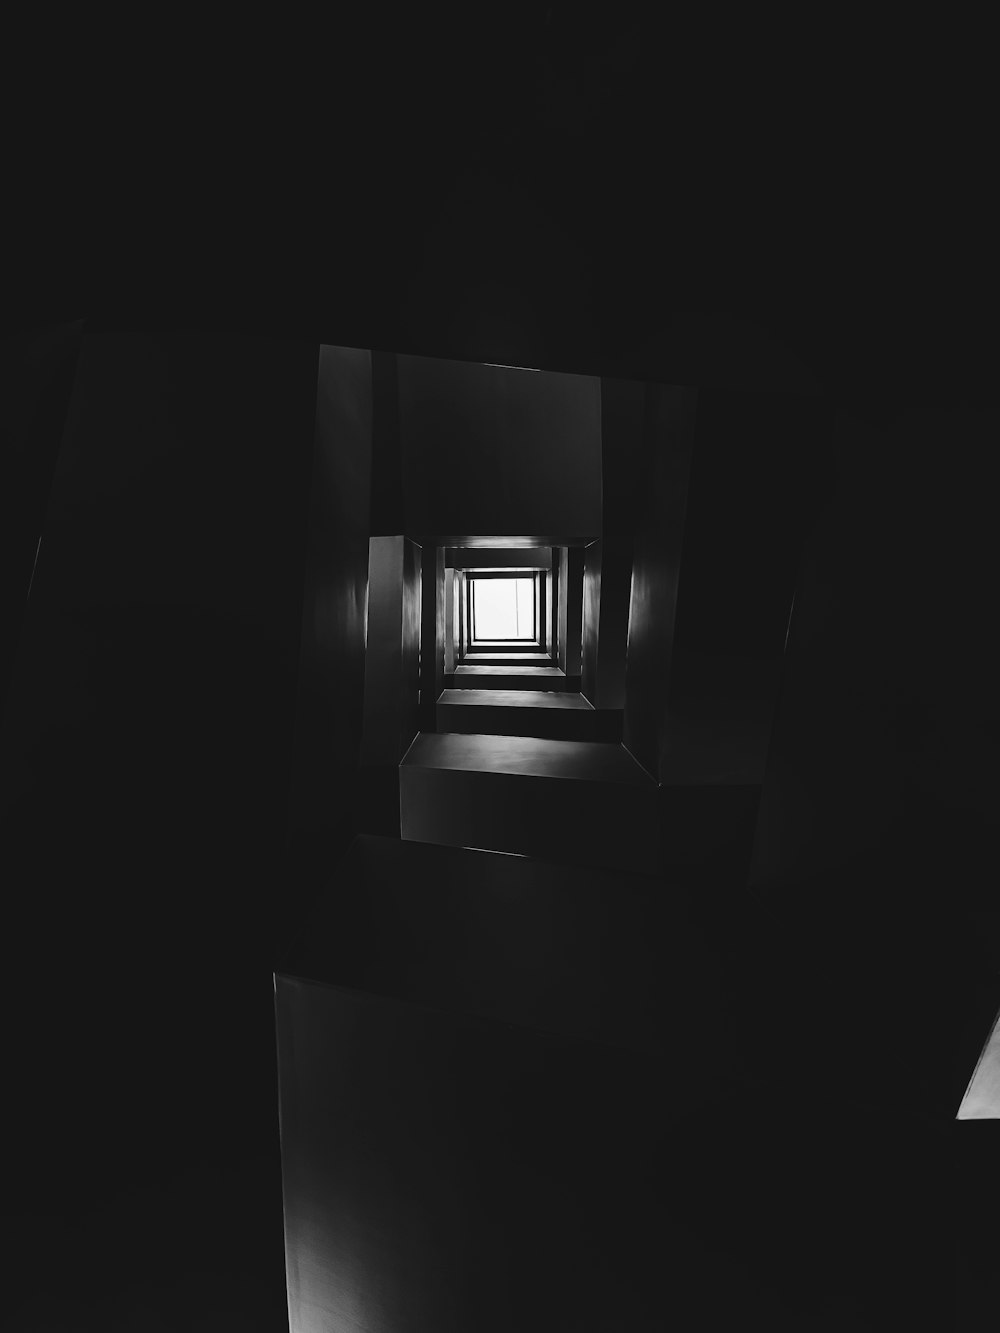 어두운 방의 창문을 찍은 흑백 사진